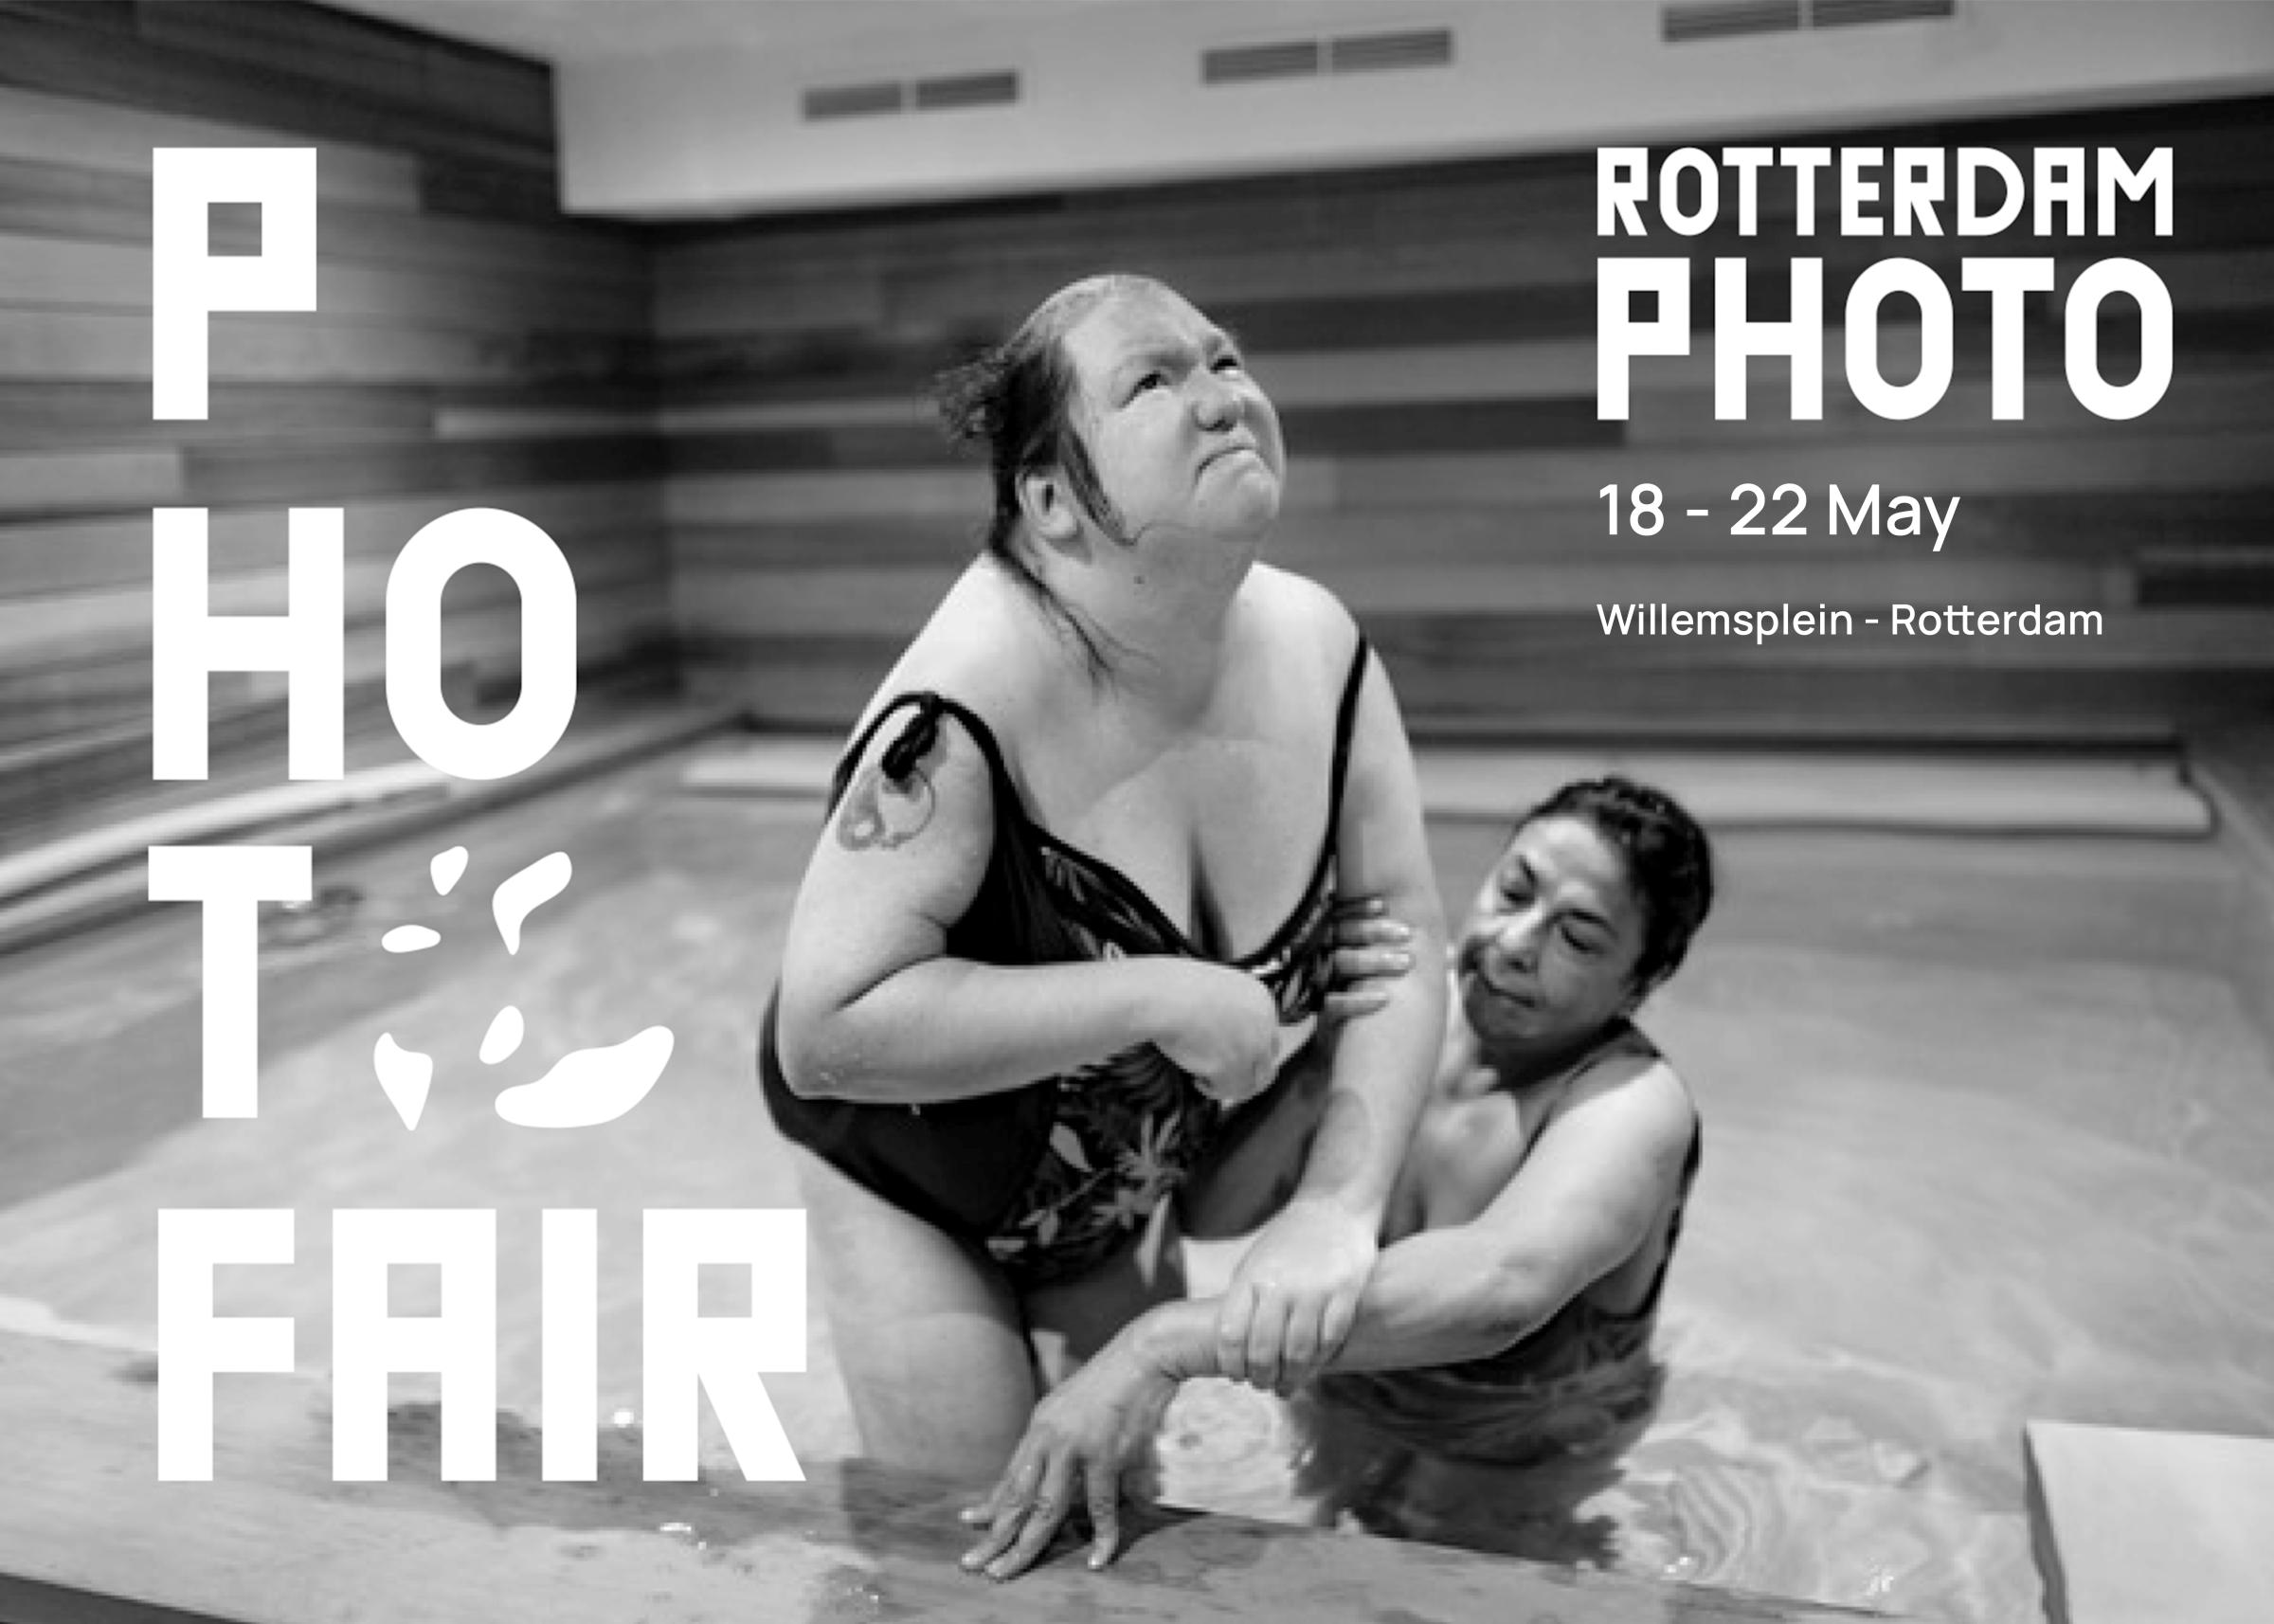 Rotterdam Photo Festival